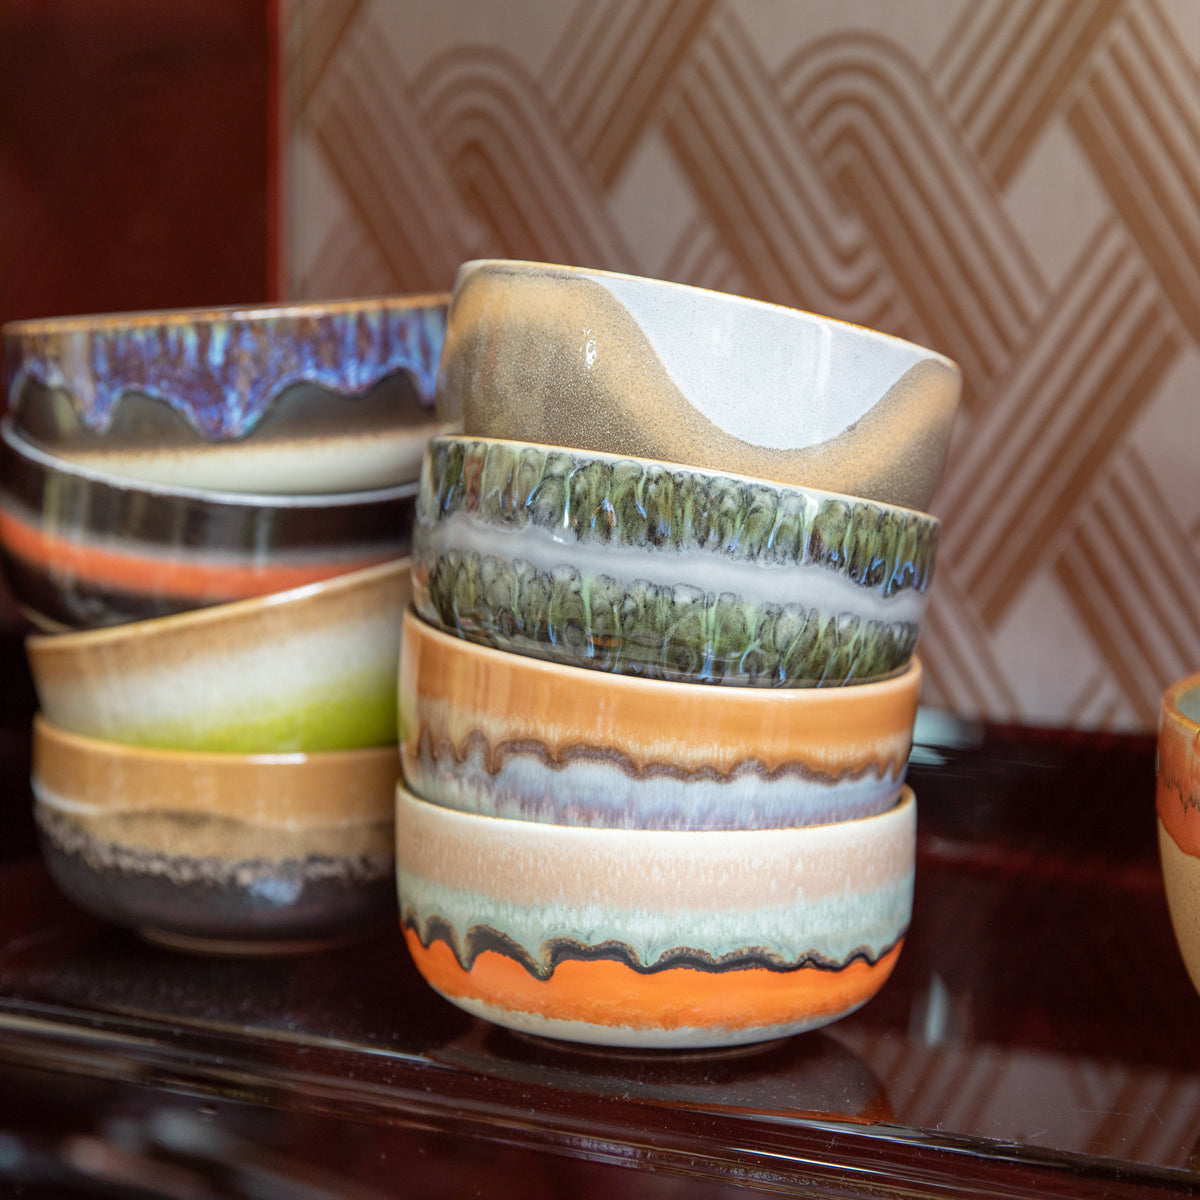 HKLiving 70s Ceramics: Dessert Bowls Reef (set of 4) ACE7259